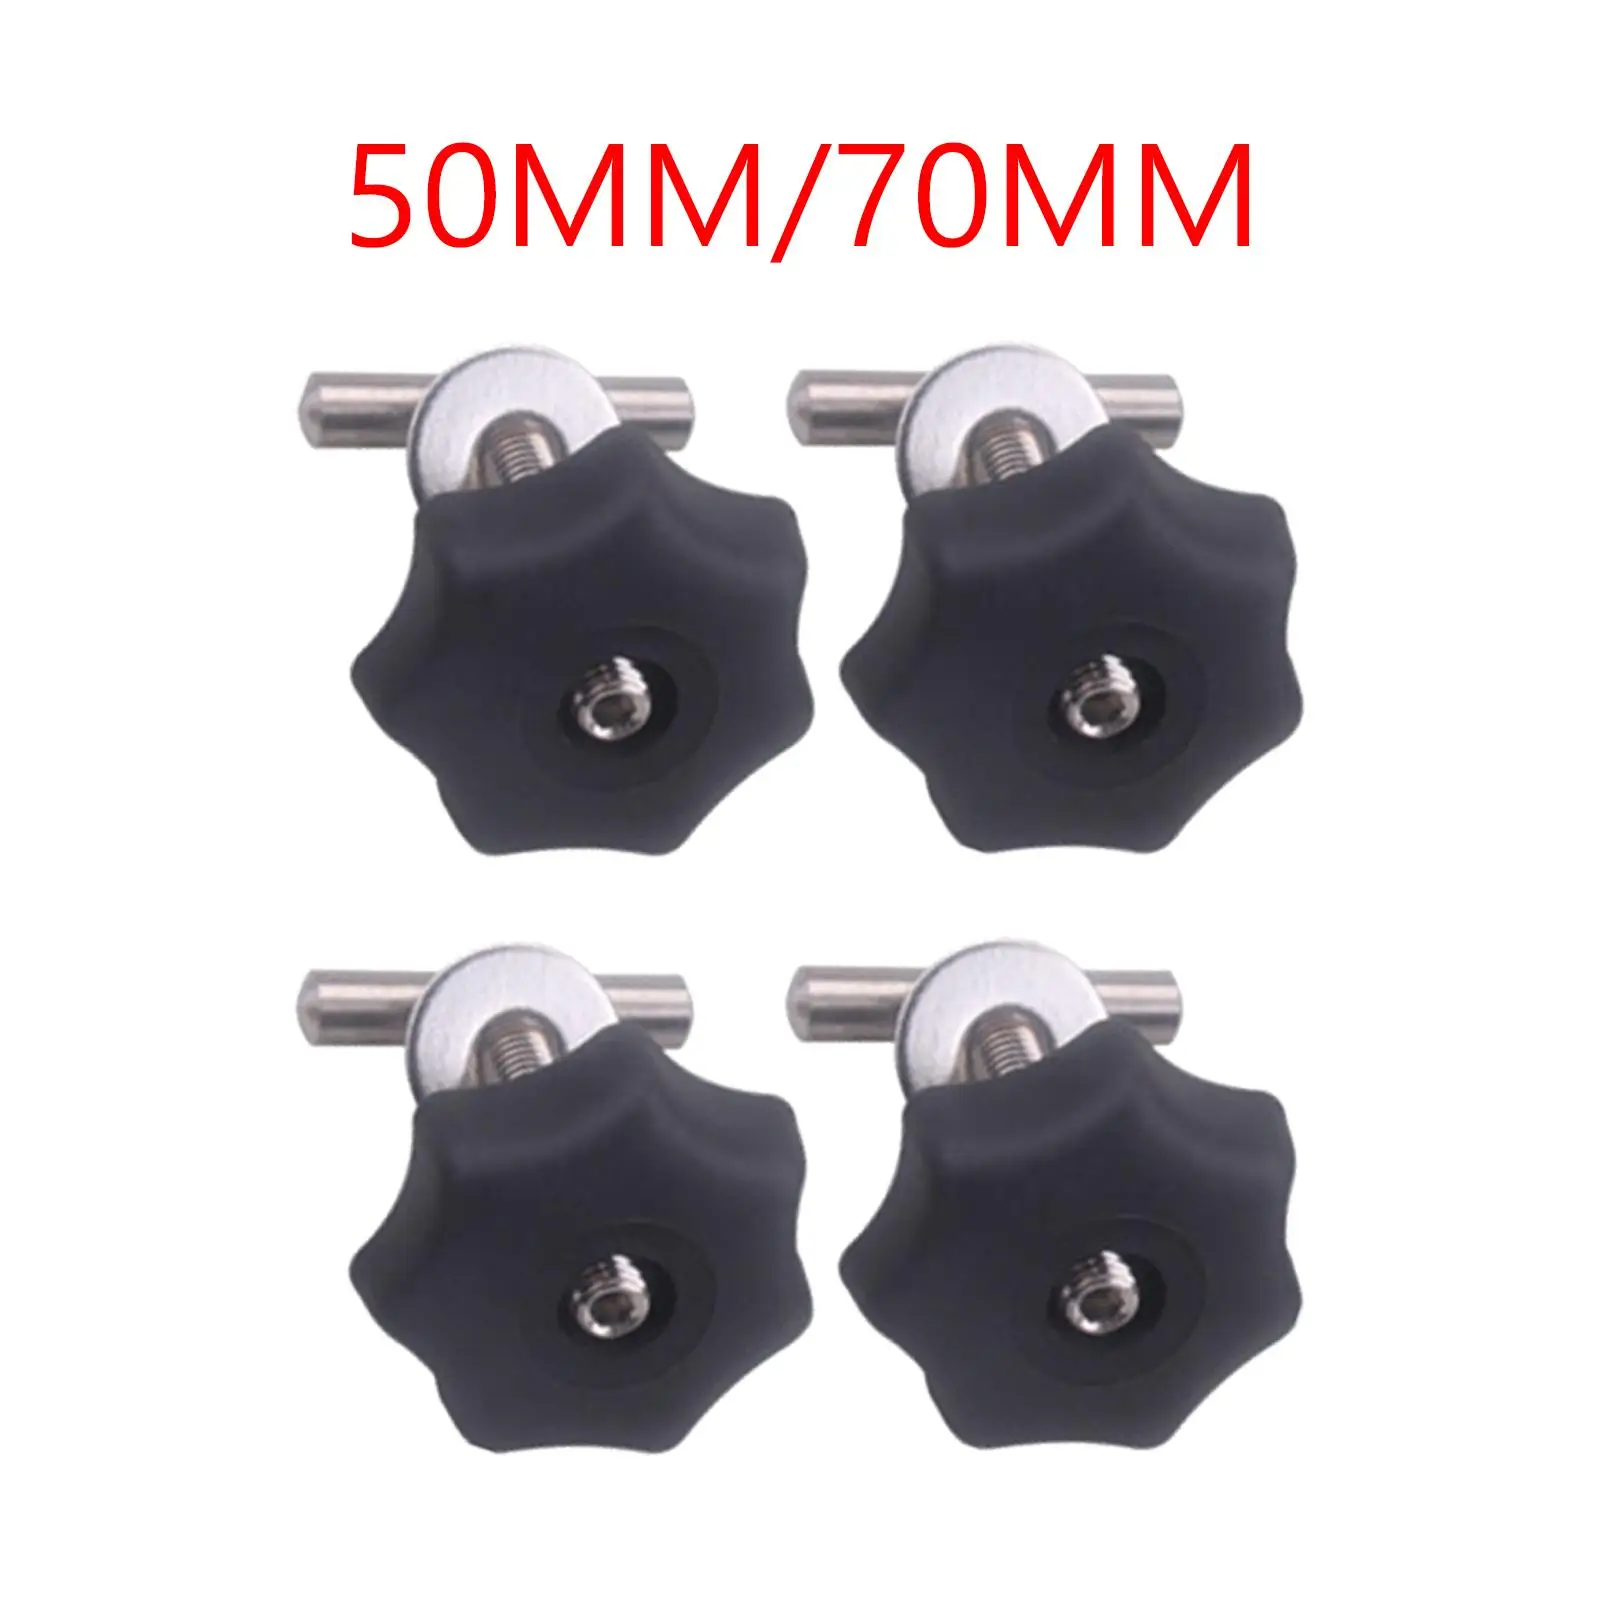 4 Pieces 5cm/7cm Locking Rail Screws for vw T5 Multiflexboard